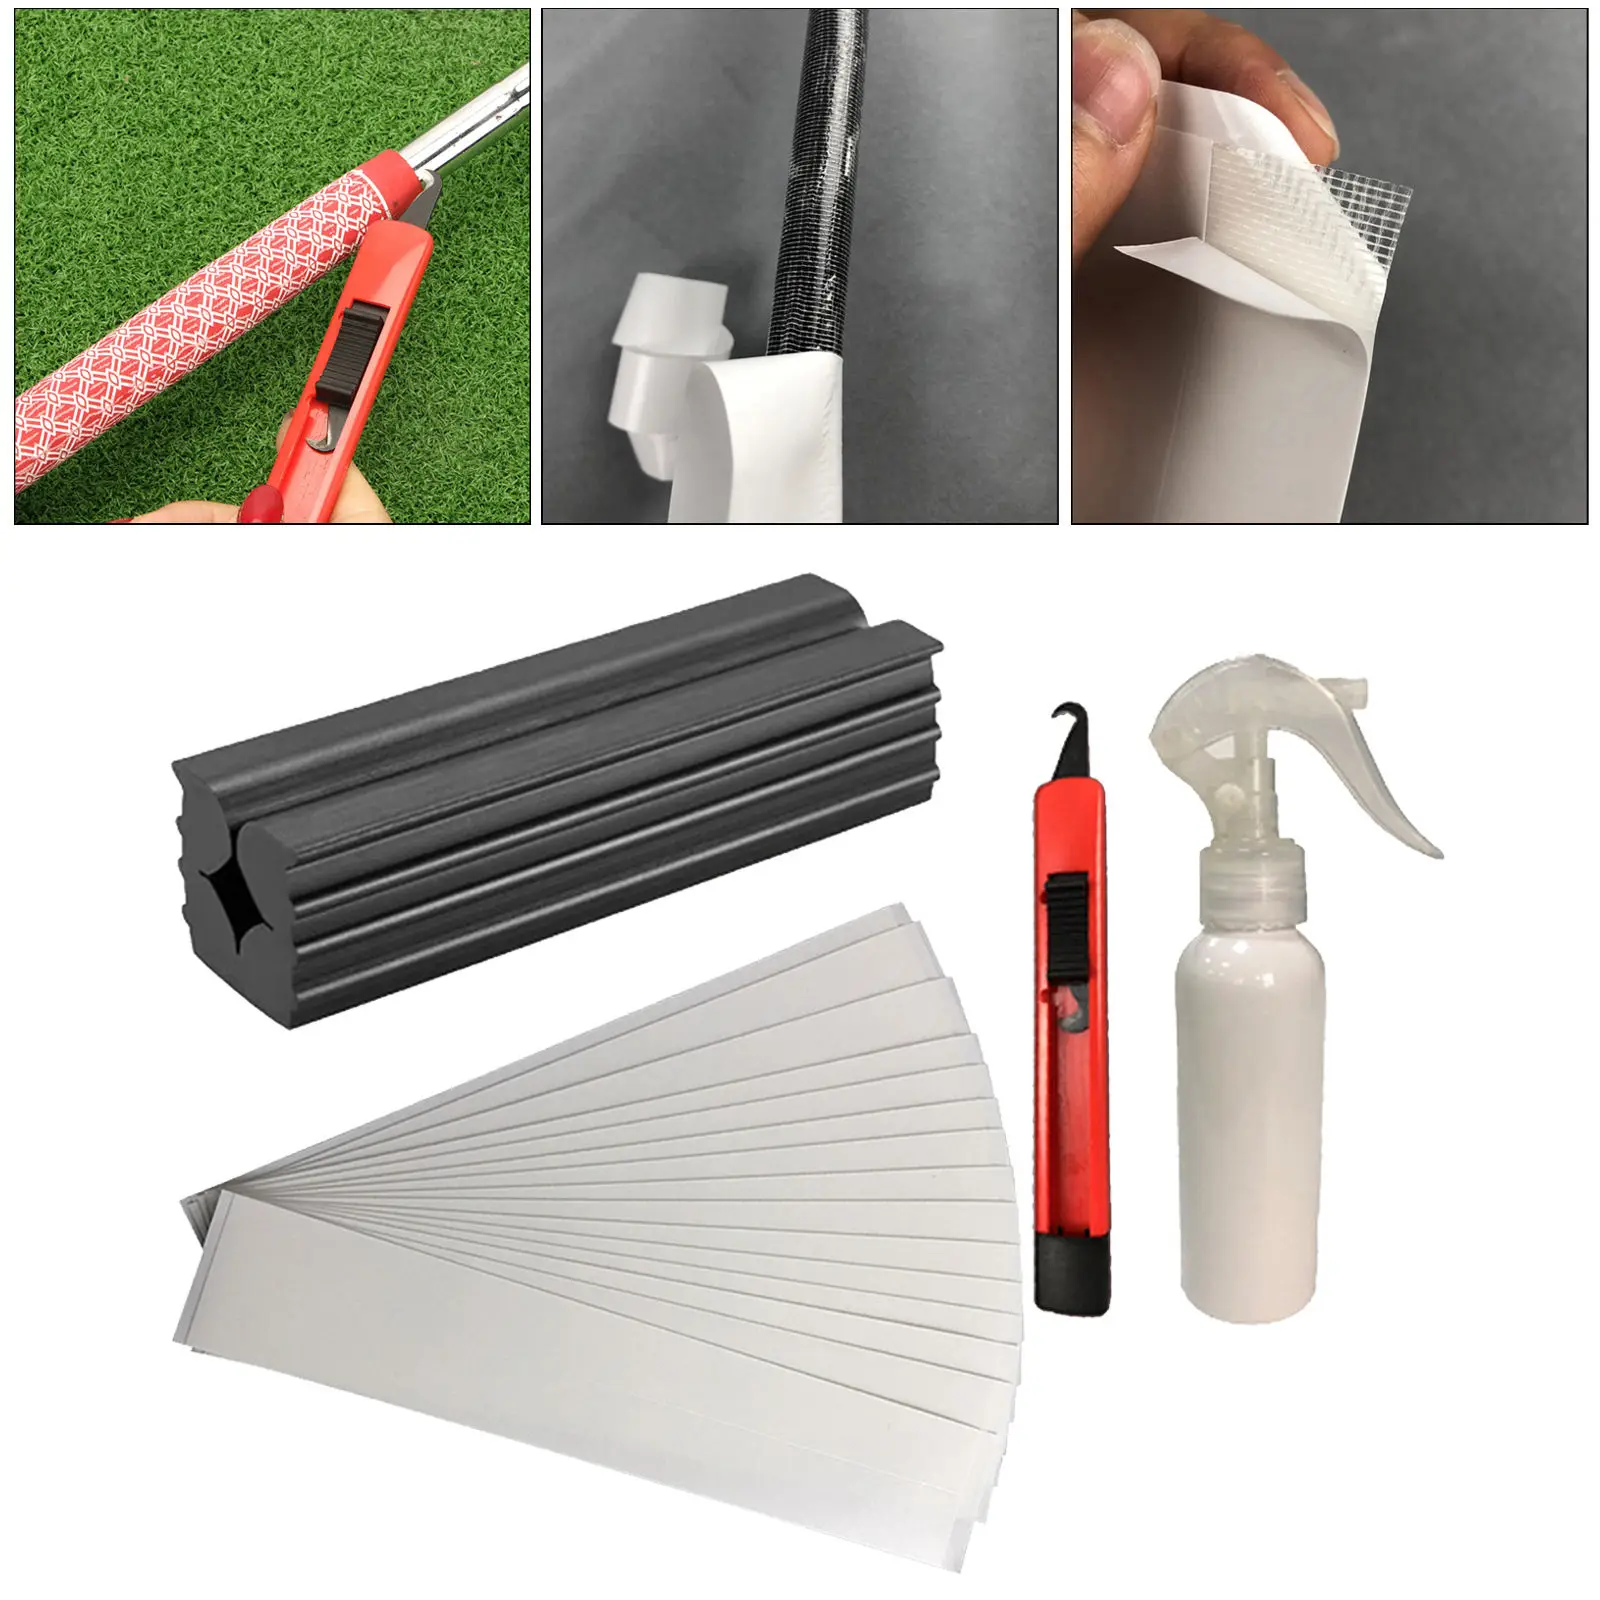 

Наборы ручек для гольфа для рериппинга, магнитная лента, растворитель ручки, клюшки для гольфа с крючком, искусственная рукоятка, захват